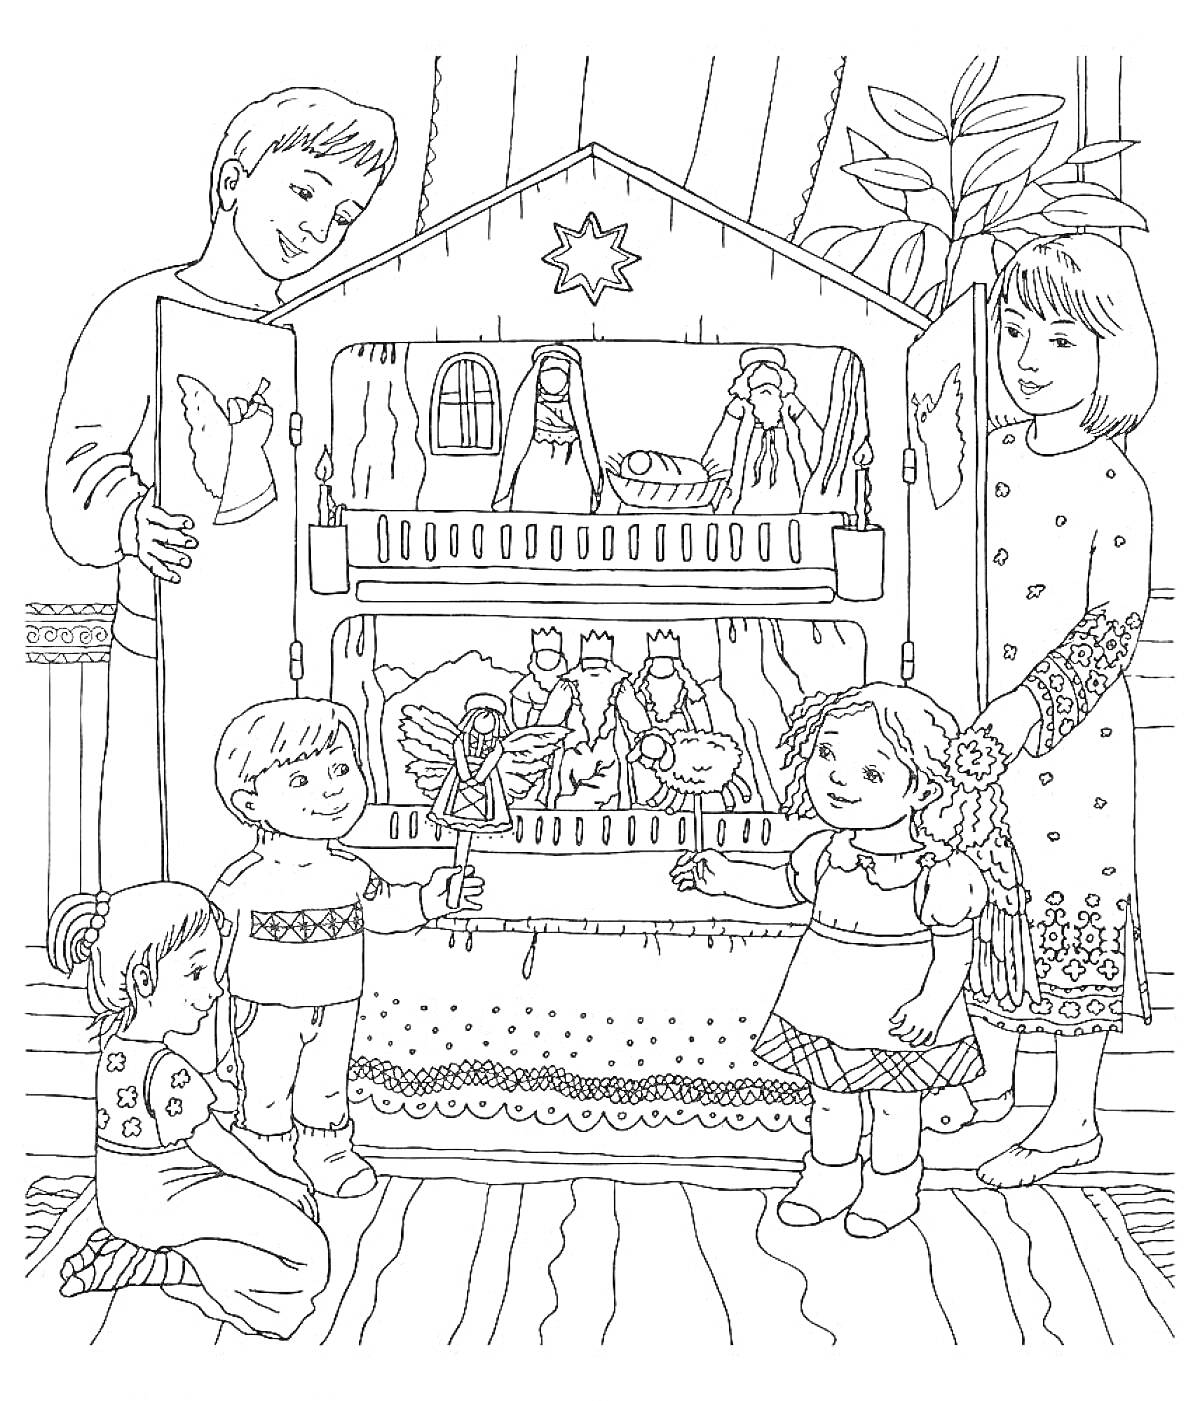 дети перед рождественским вертепом с фигурками ангелов, аистов и волхвов, один мальчик держит фигурку ангела, взрослые помогают им